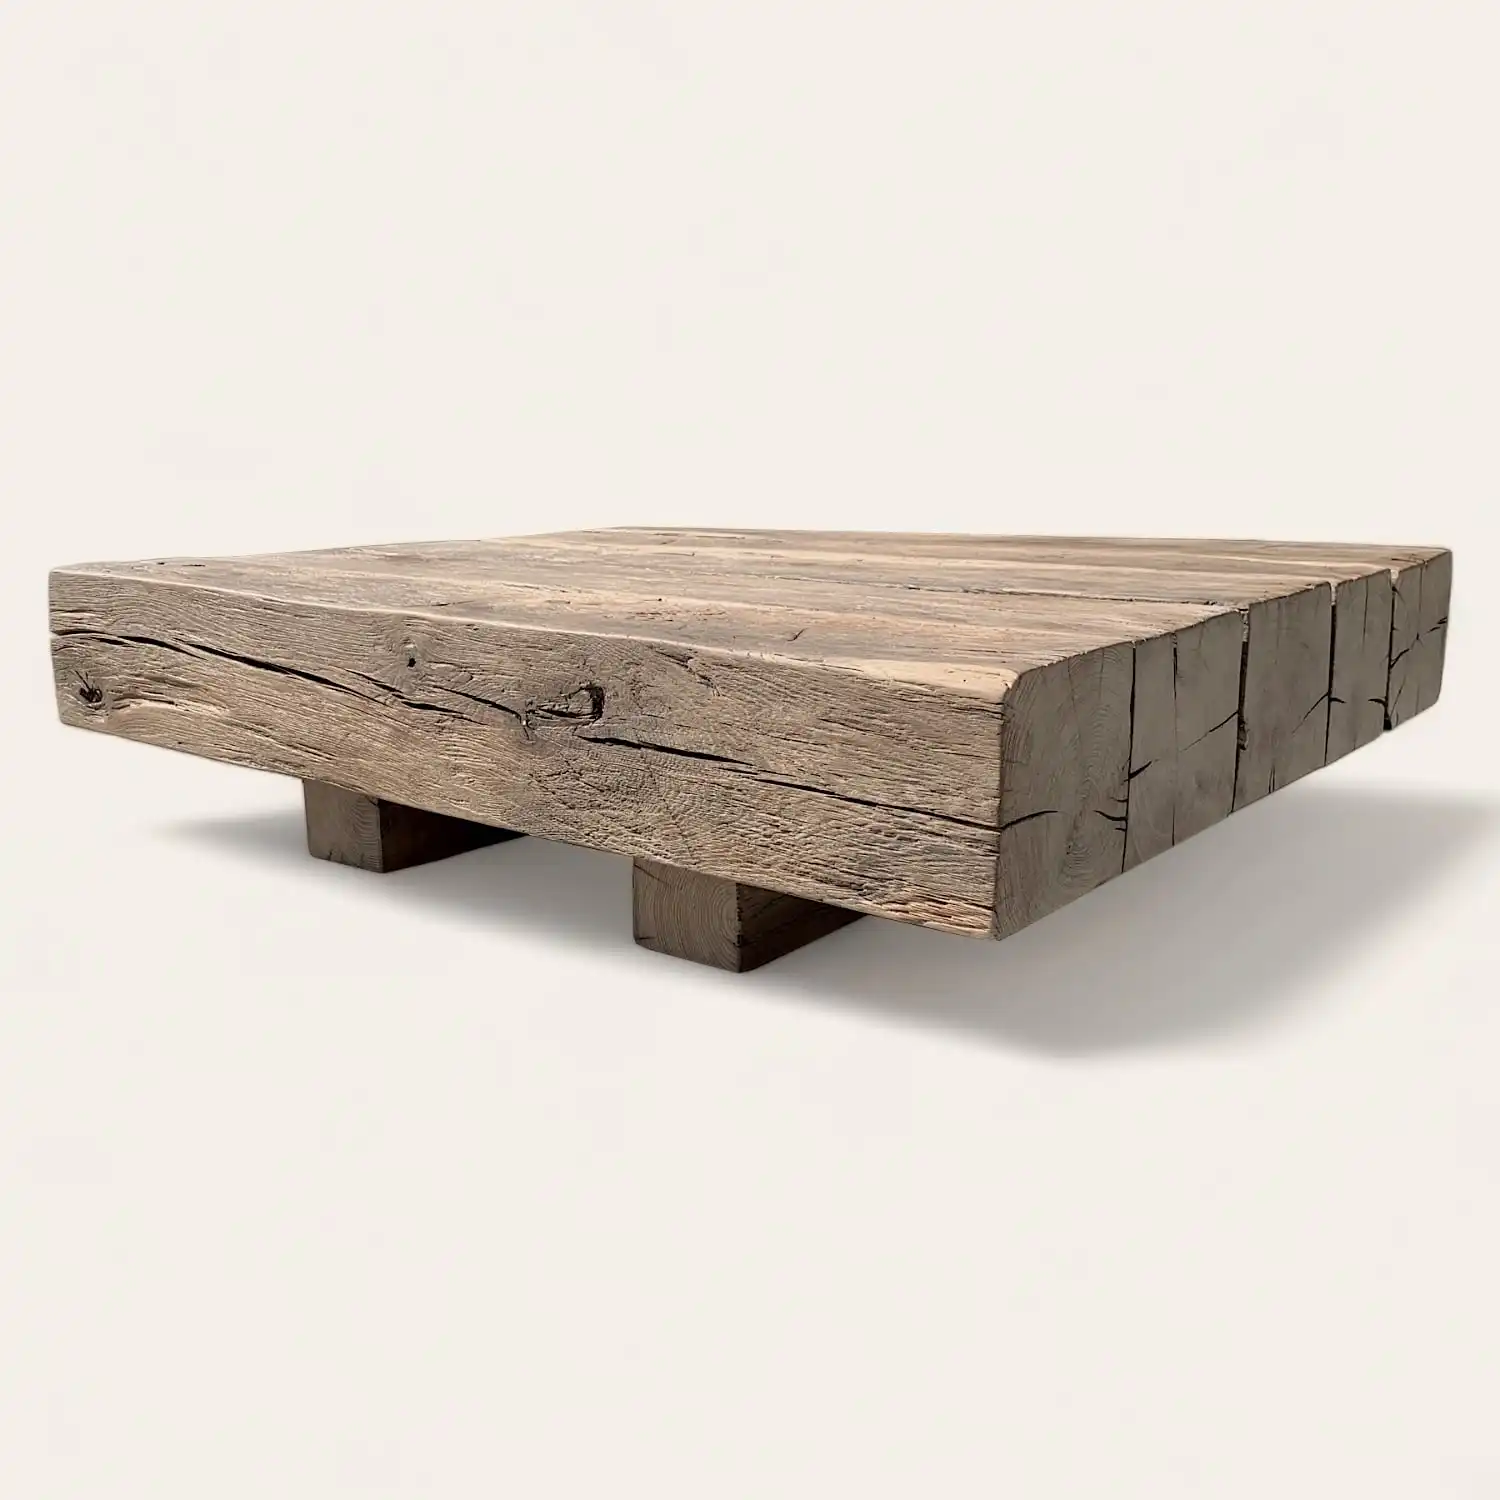  Une table basse ancienne en bois fabriquée à partir de bois récupéré. 